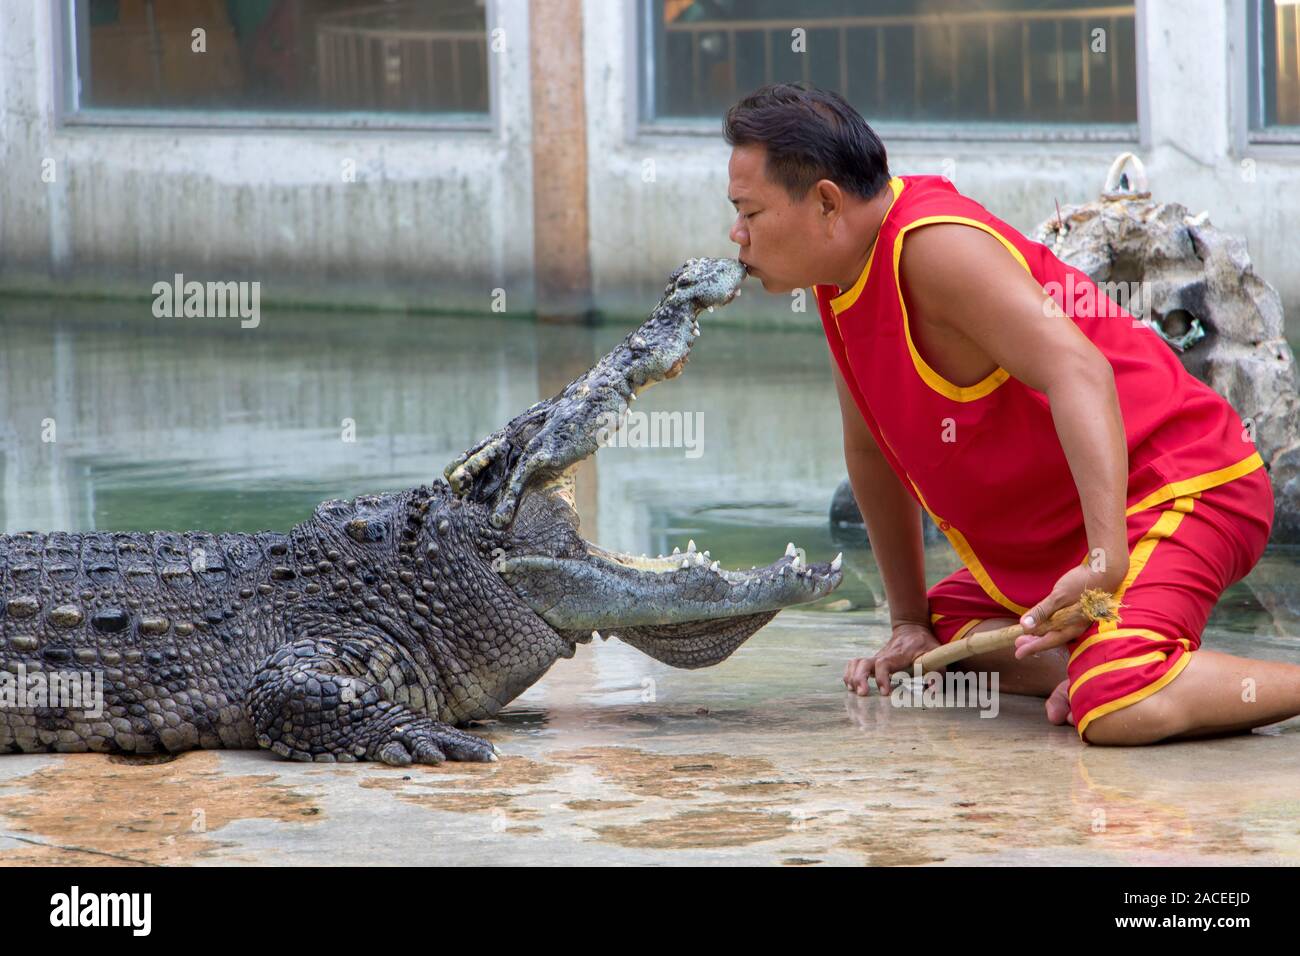 SAMUT PRAKAN, Thailand, 18. Mai 2019, gefährliche Leistung mit wilden Tieren. Die tamer küsst das Krokodil Schnauze. Stockfoto